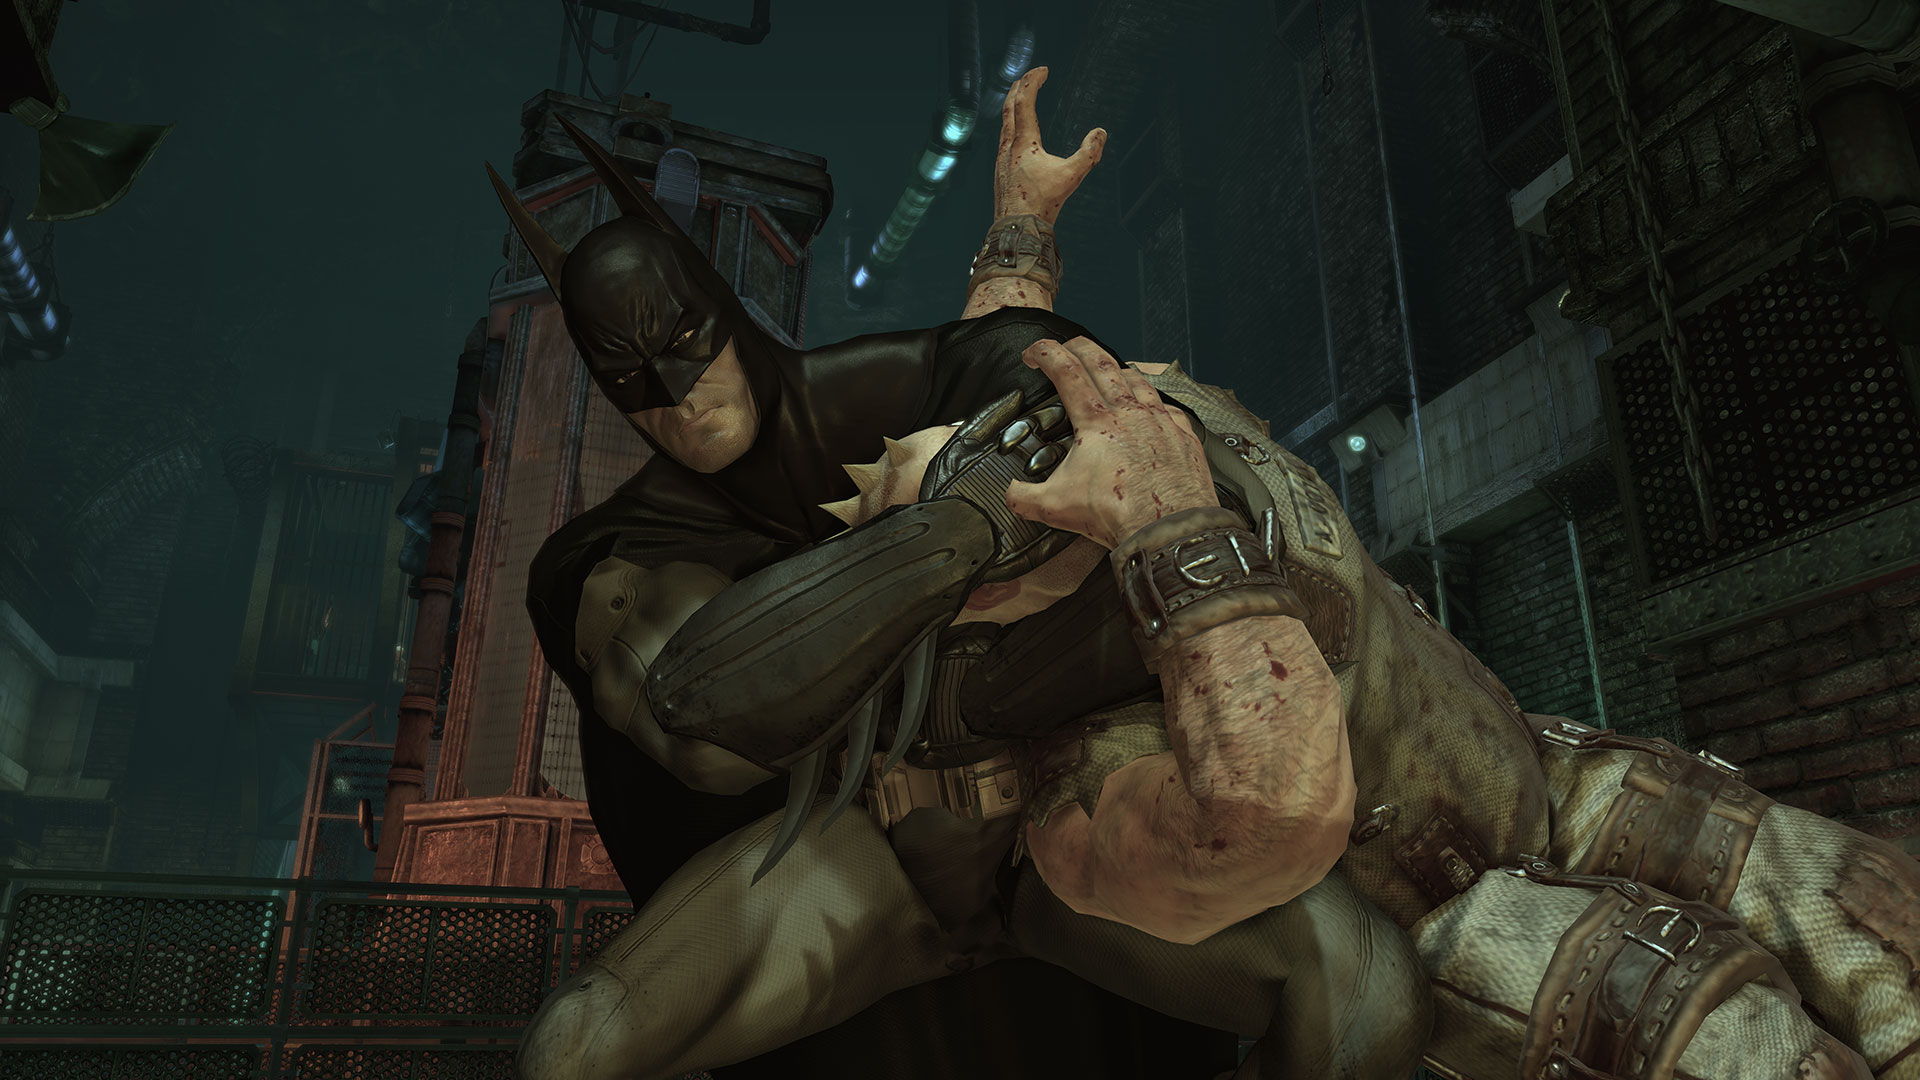 Immagine pubblicata in relazione al seguente contenuto: Nuovi screenshot del game Batman: Arkham Asylum da Eidos | Nome immagine: news10604_1.jpg